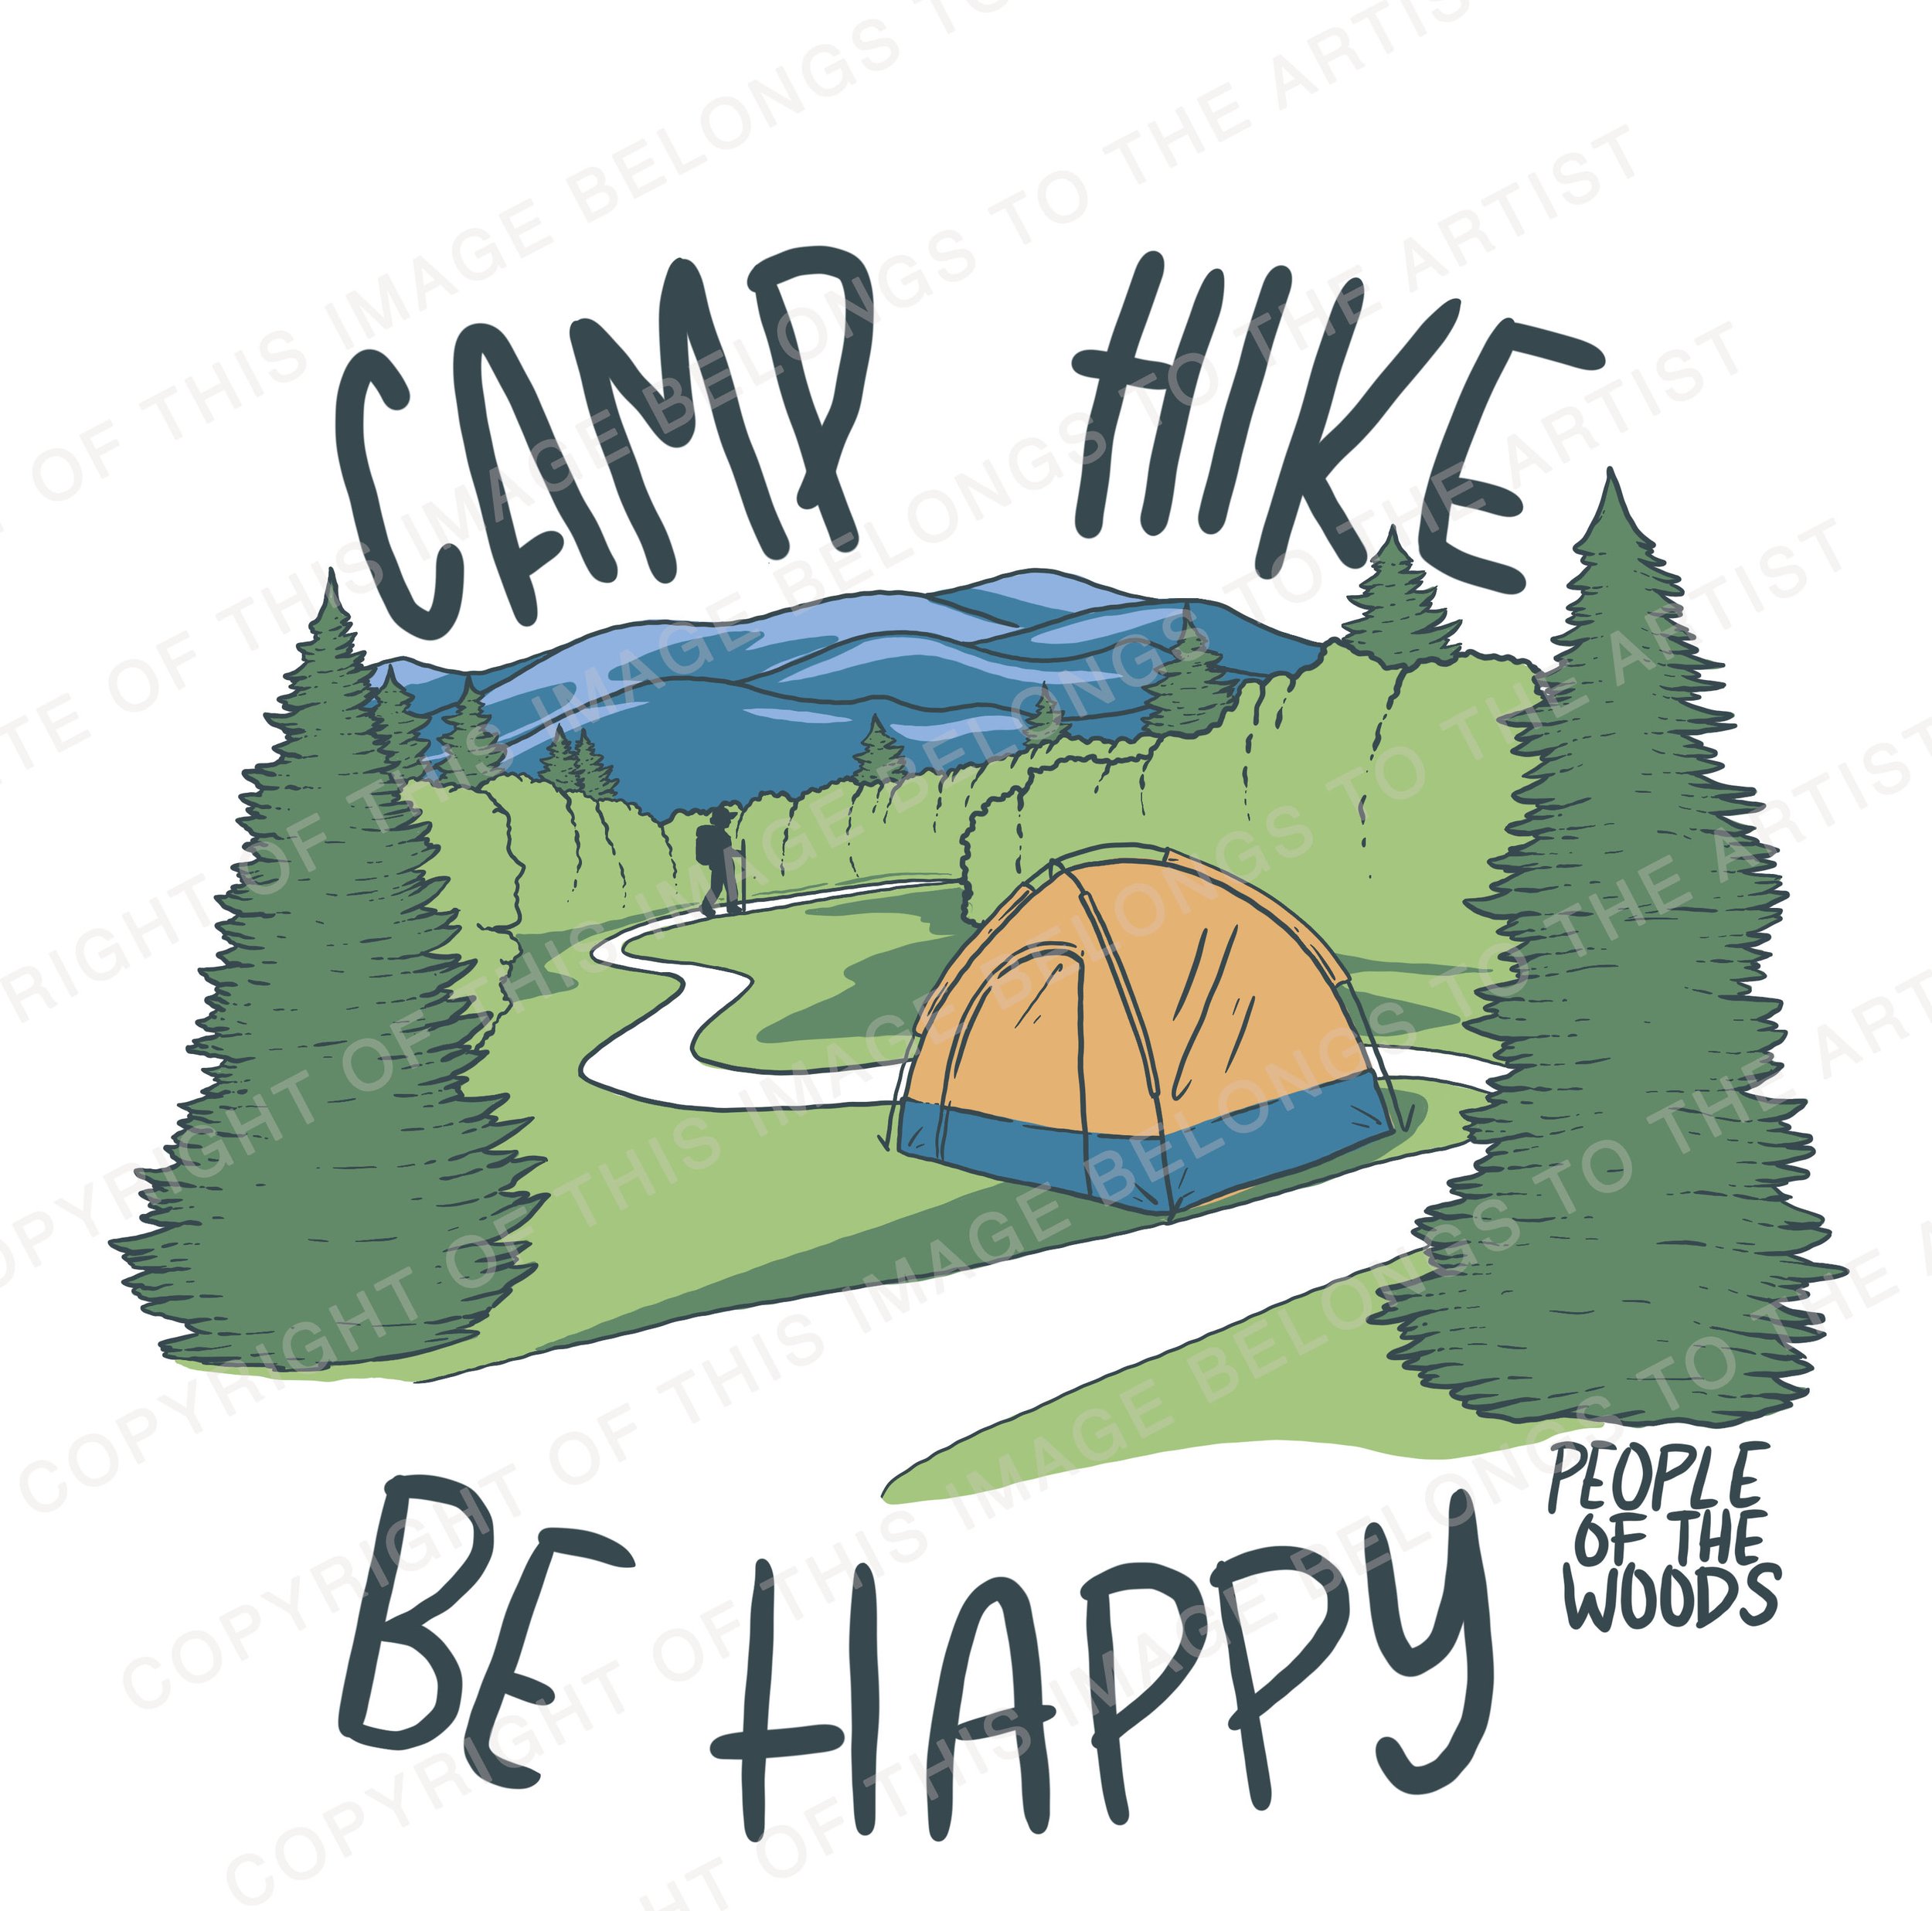 Camp Hike Be Happy.jpg